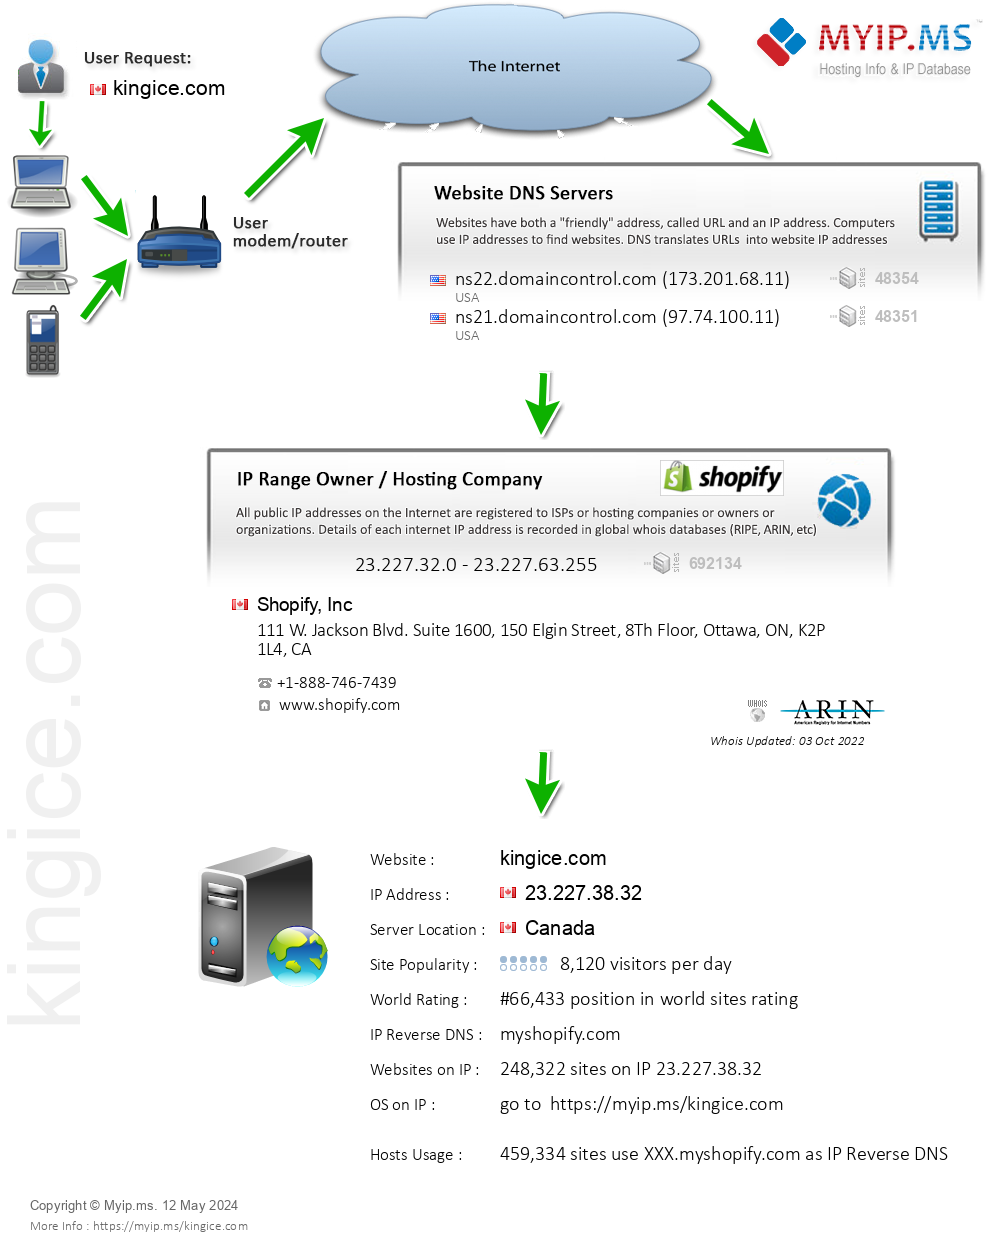 Kingice.com - Website Hosting Visual IP Diagram